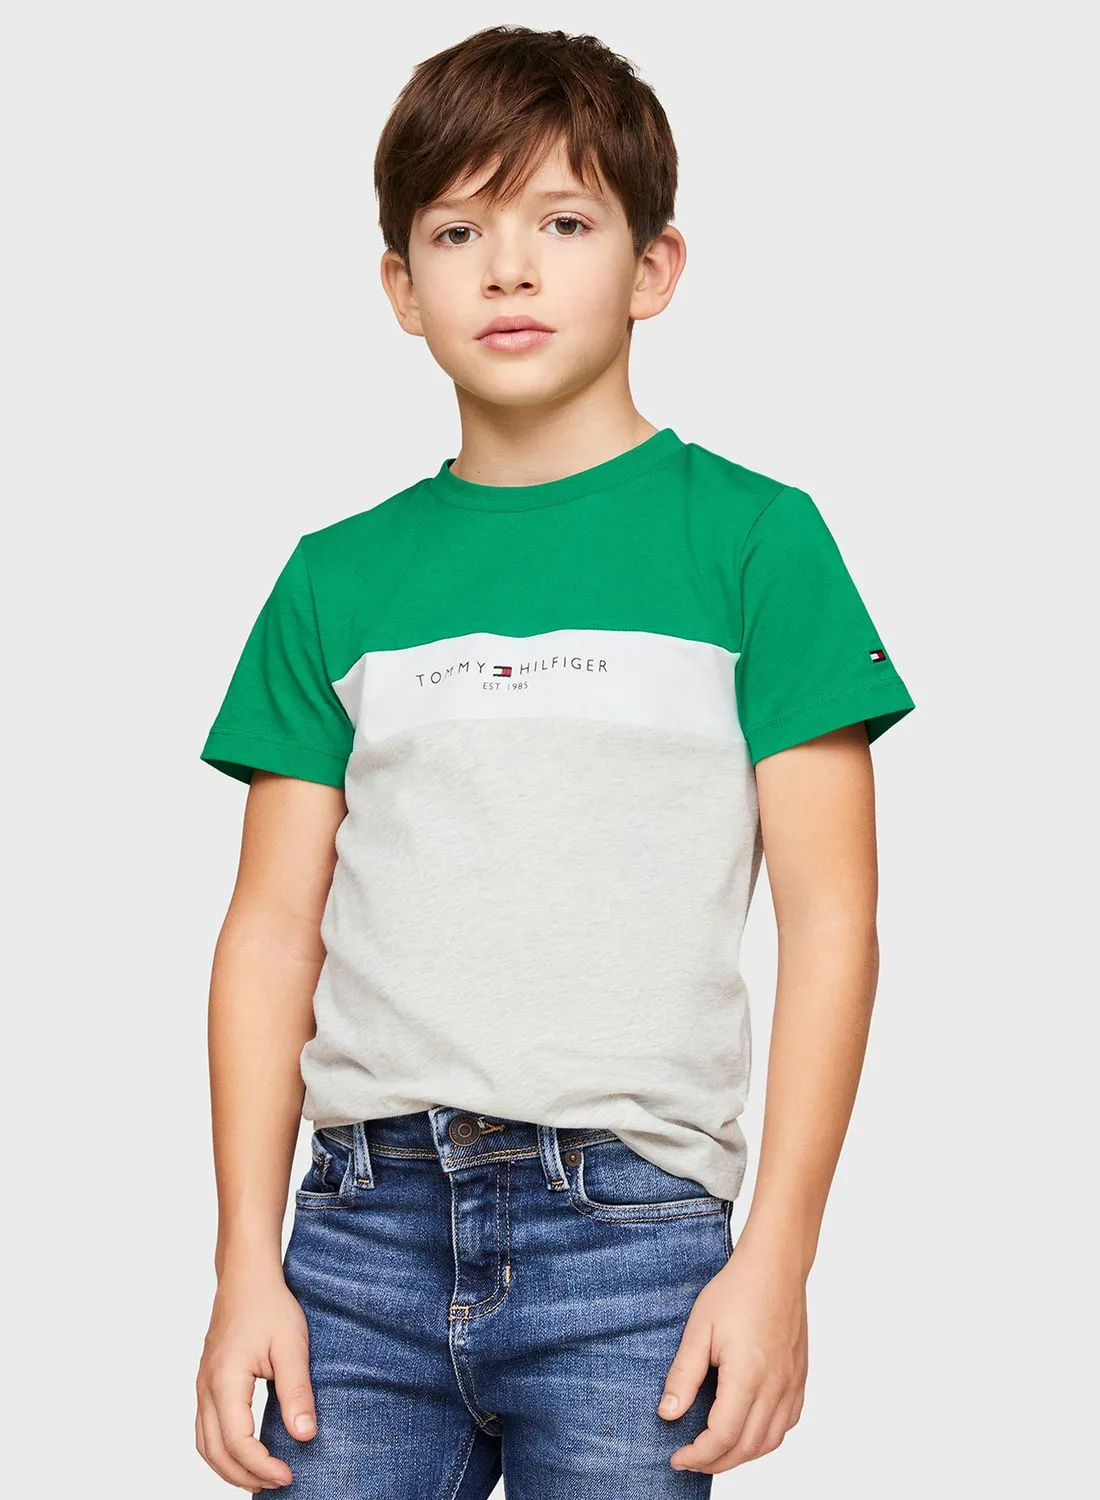 TOMMY HILFIGER Kids Color Block T-Shirt